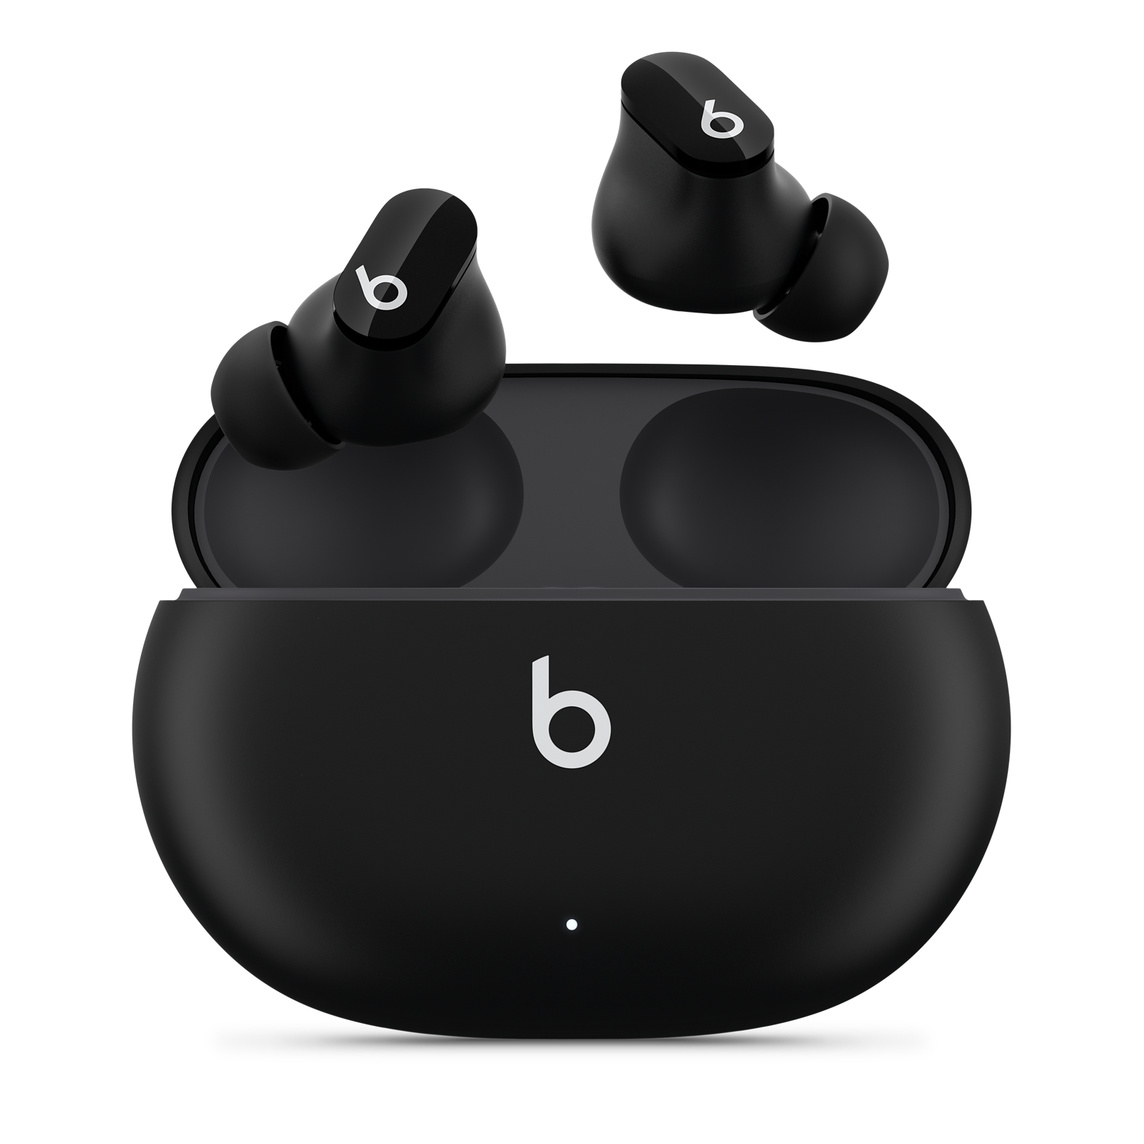 De helt trådløse, støjreducerende Beats Studio Buds-øretelefoner i sort med Beats-logo, ovenover praktisk opladningsetui.